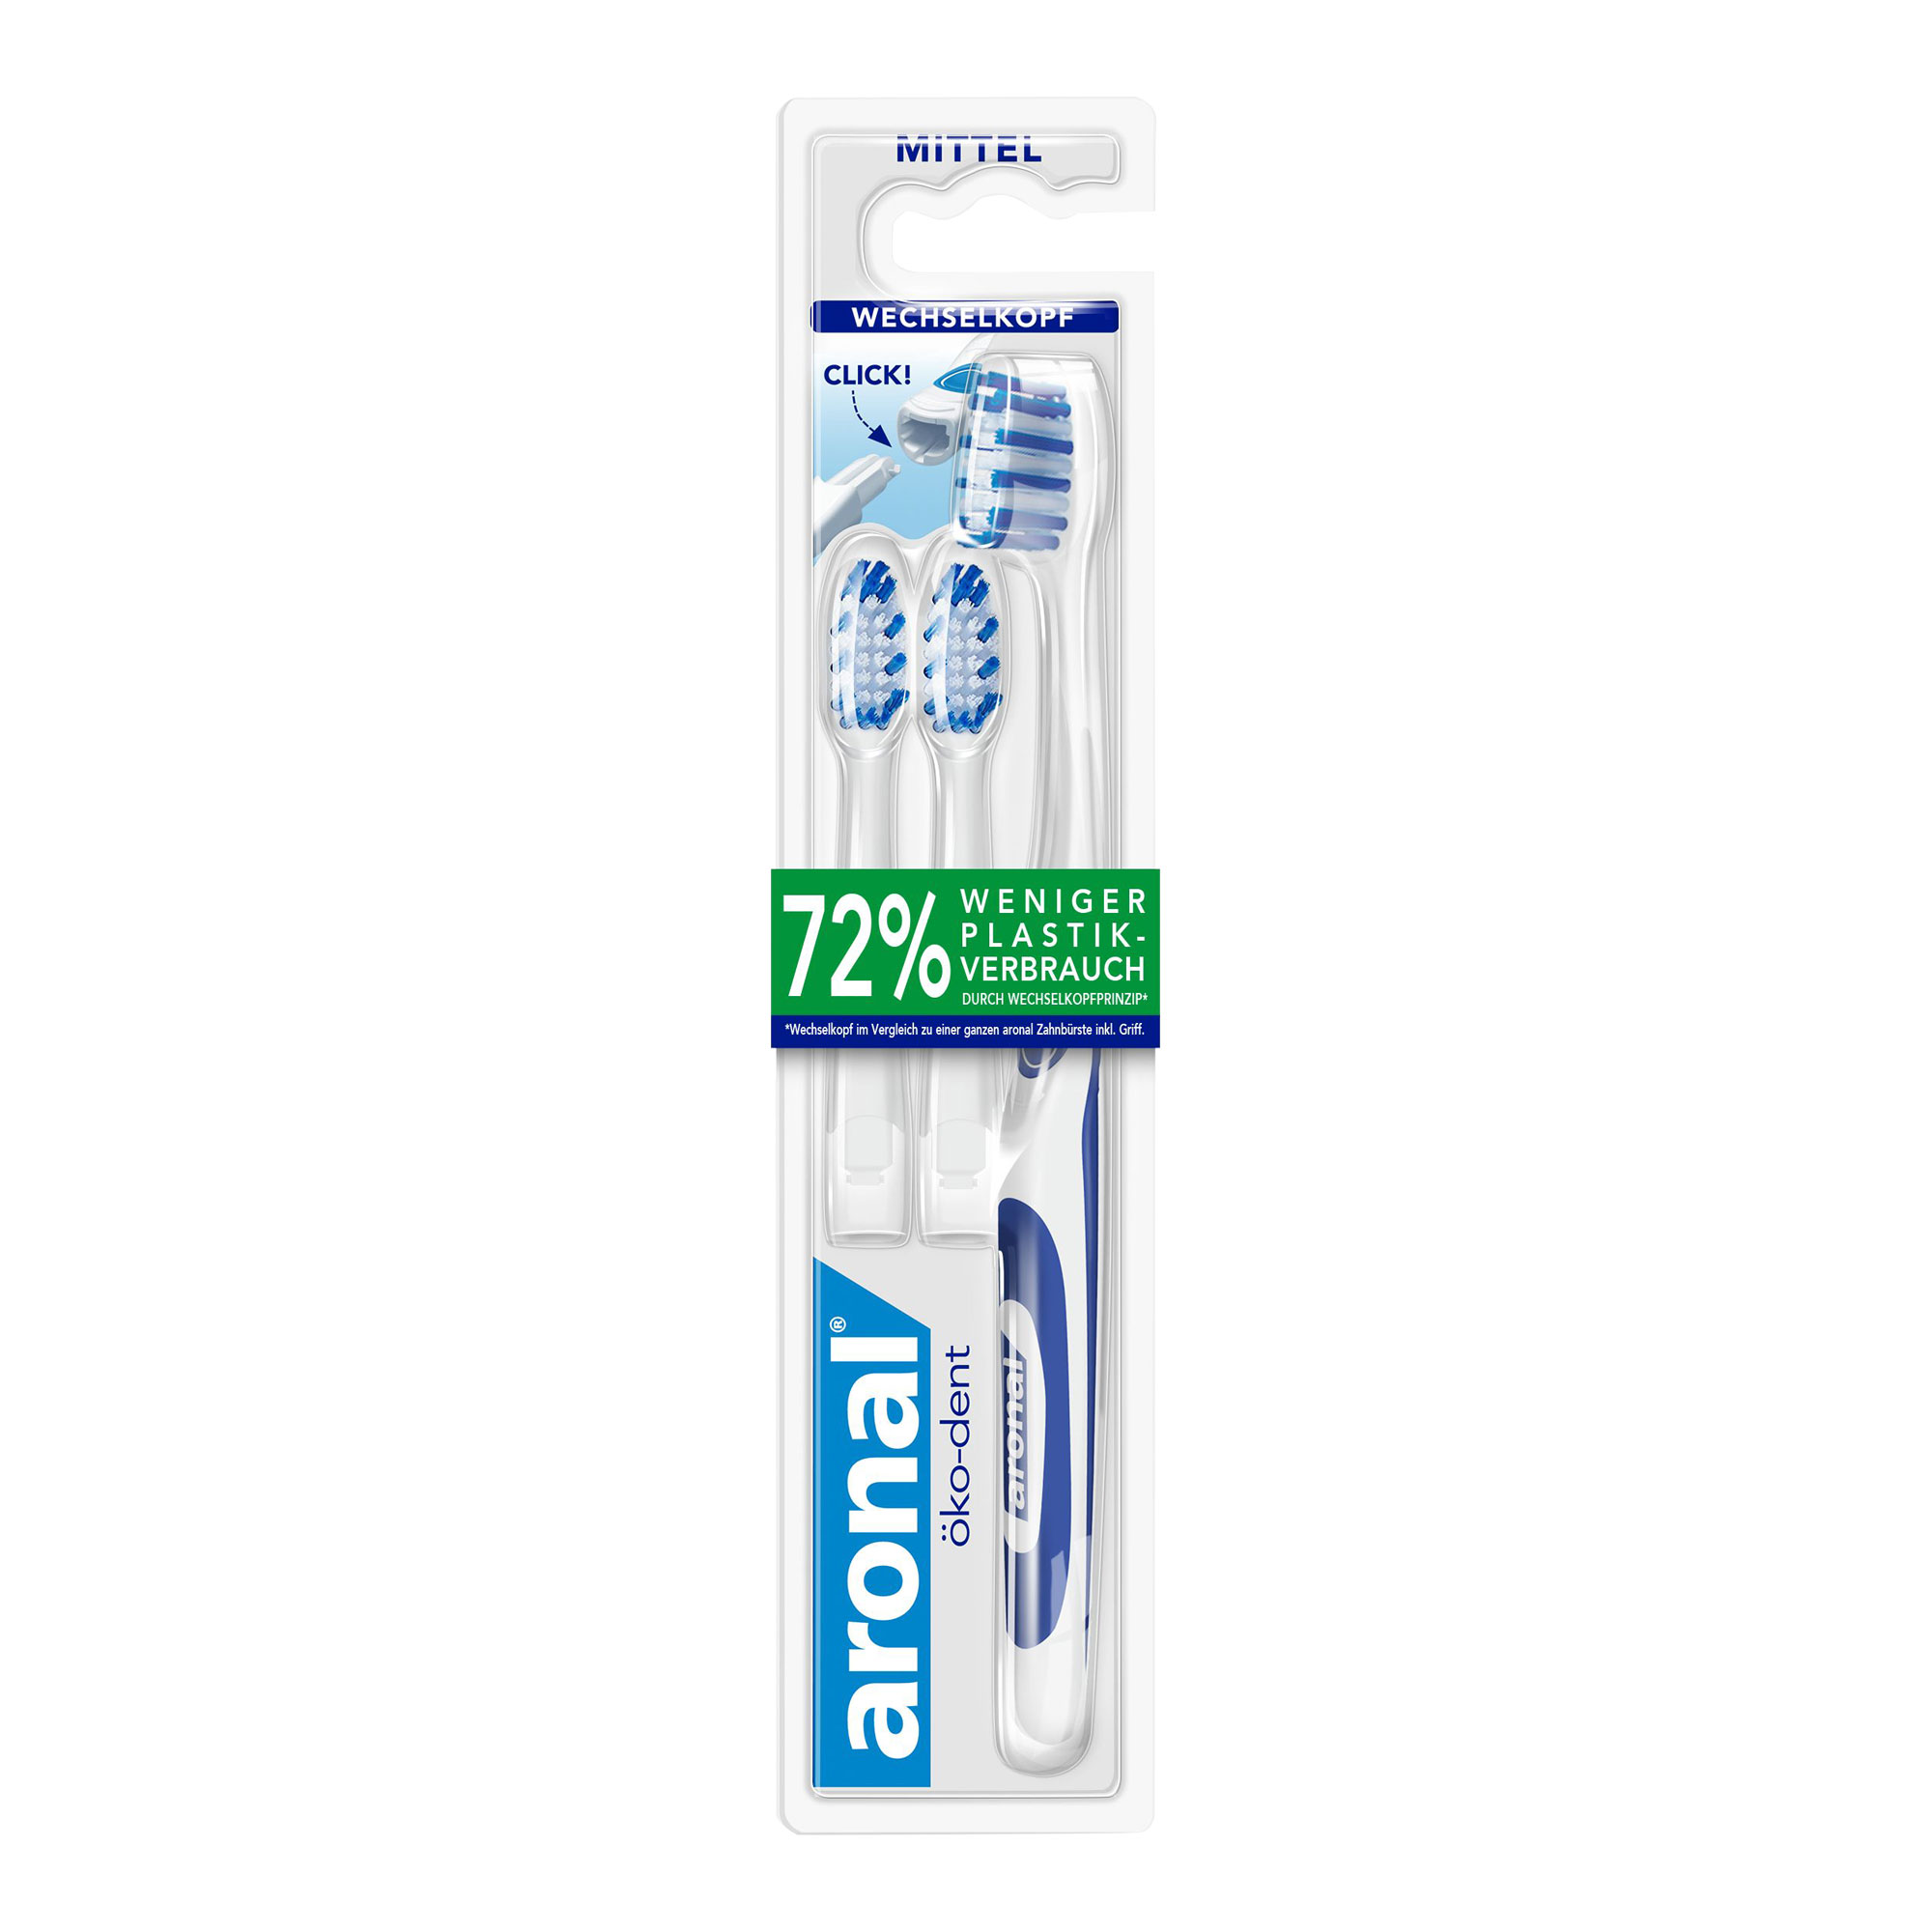 Zahnbürste mit abgerundeten, mittelharten Borsten und Wechselkopf-Prinzip für mehr Komfort und Hygiene.